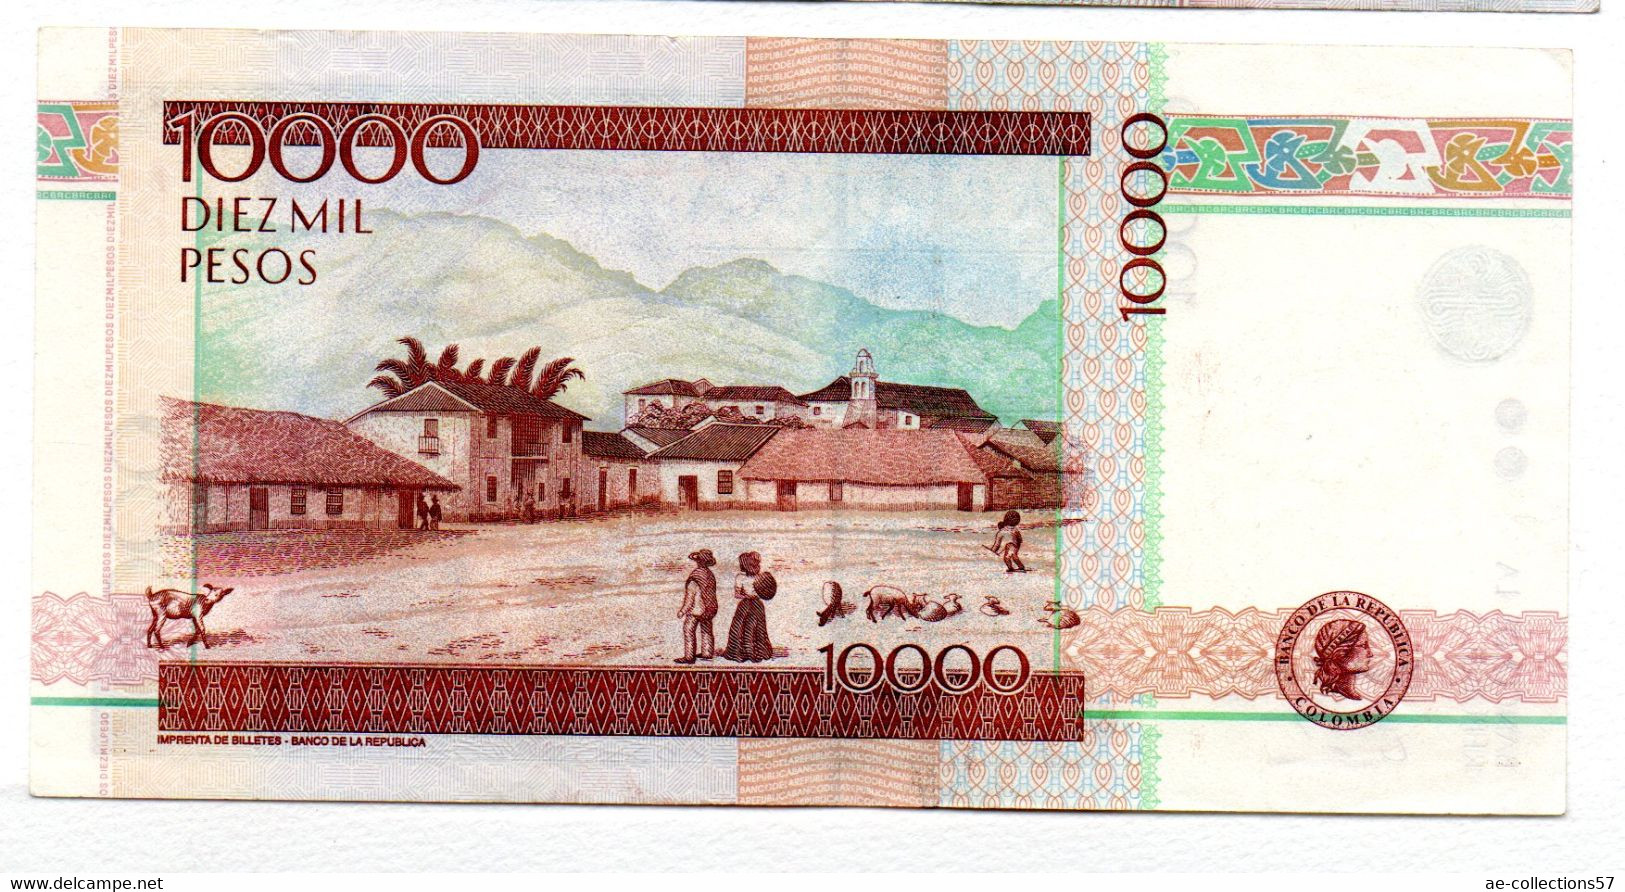 Colombie  / 10000 Pesos 21-2-2004  / SUP - Kolumbien